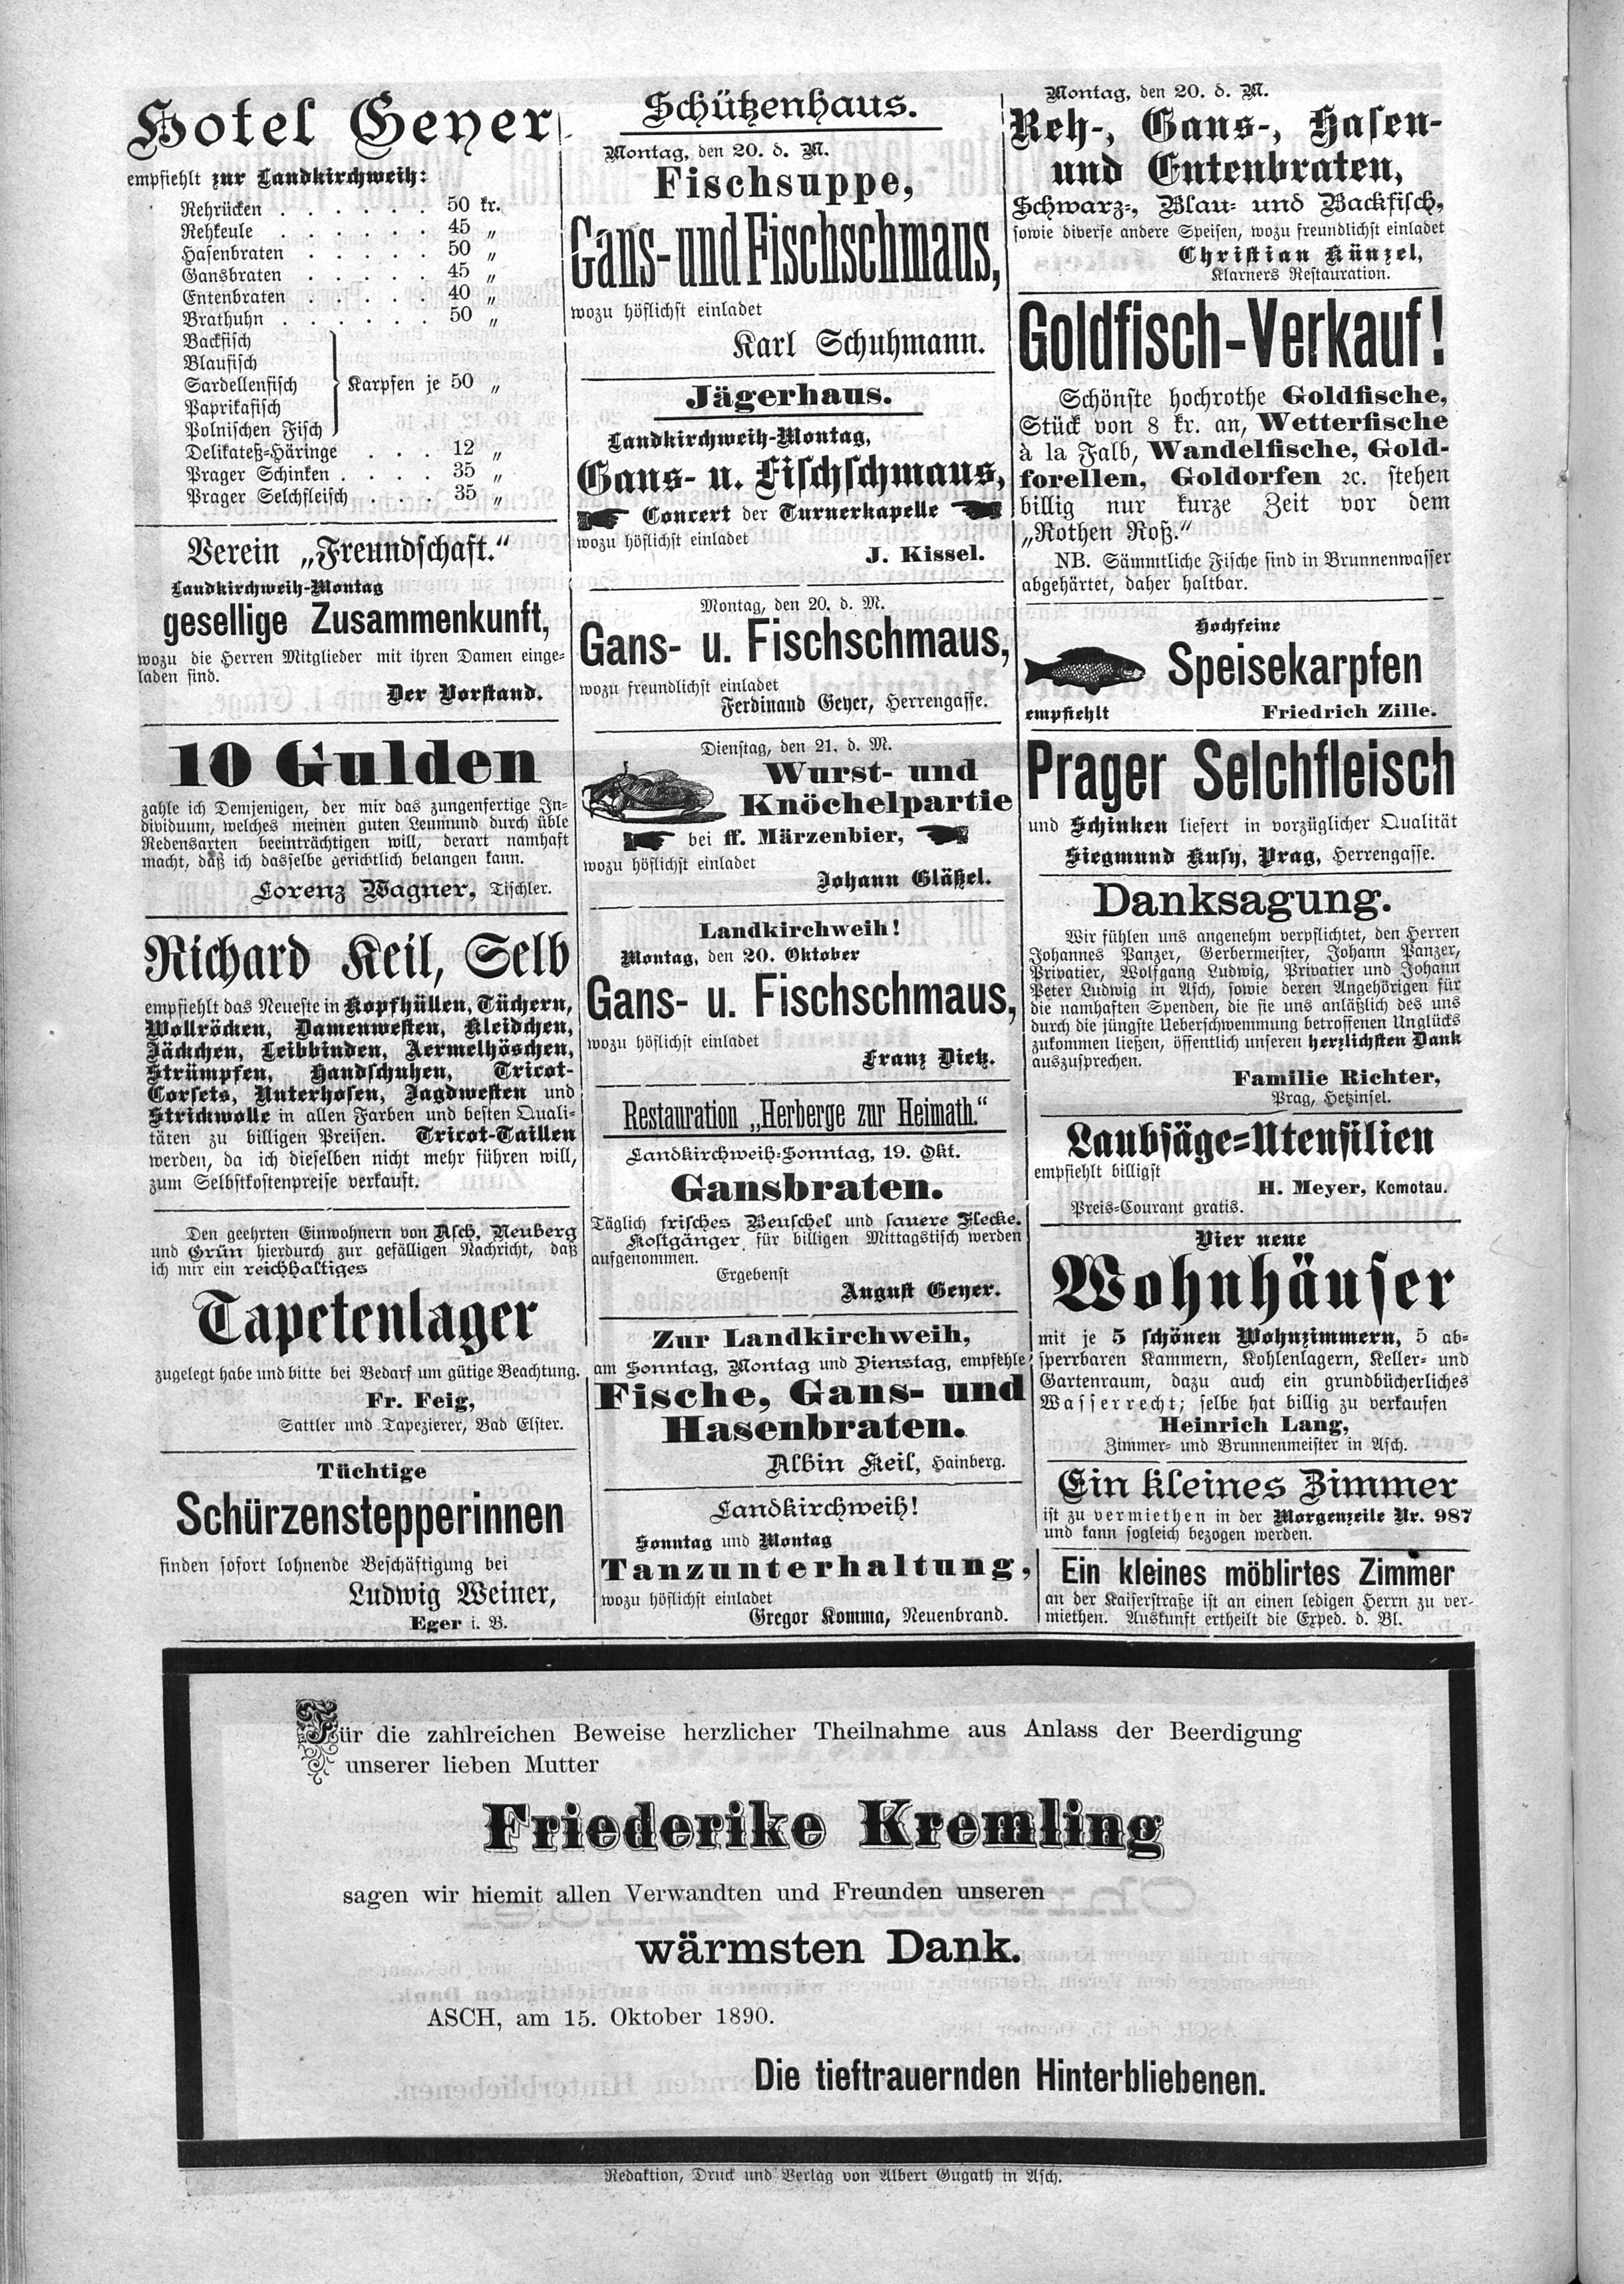 8. soap-ch_knihovna_ascher-zeitung-1890-10-18-n83_3450